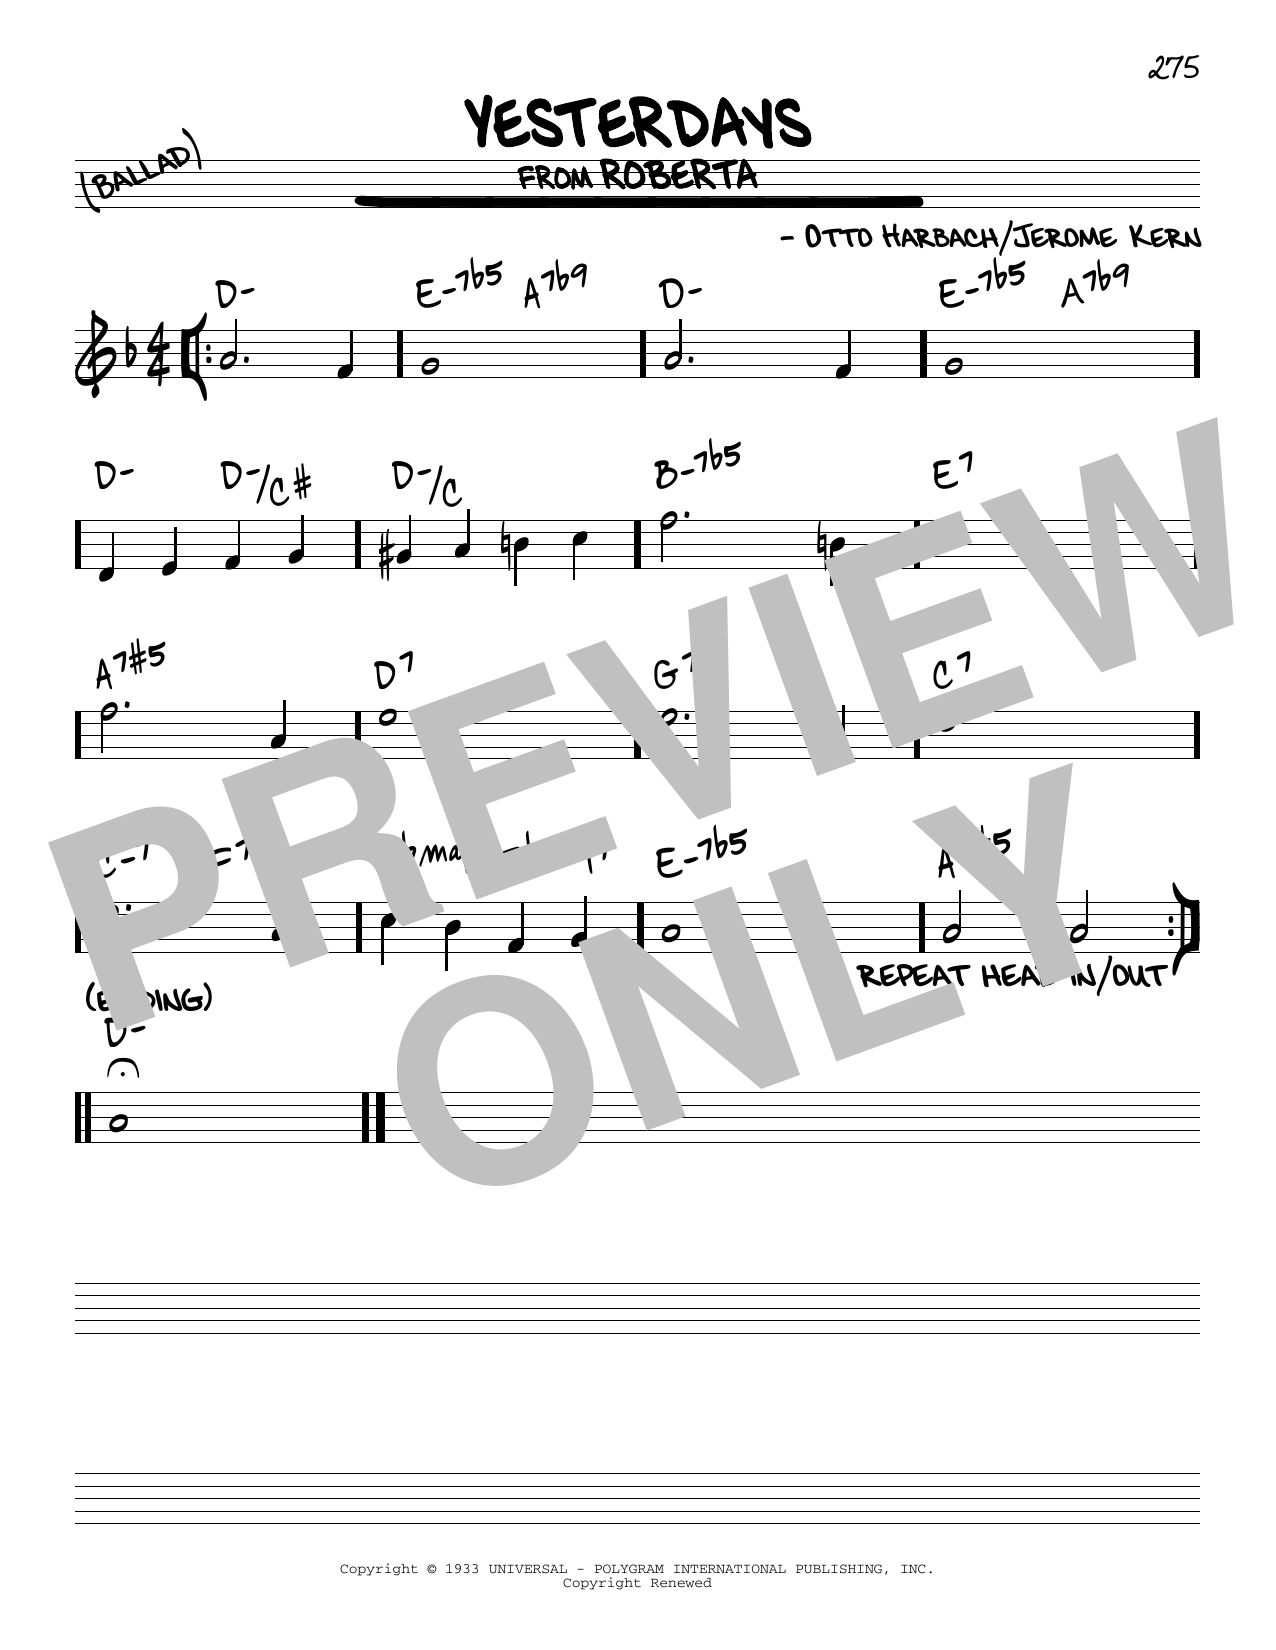 Download Jerome Kern Yesterdays Sheet Music